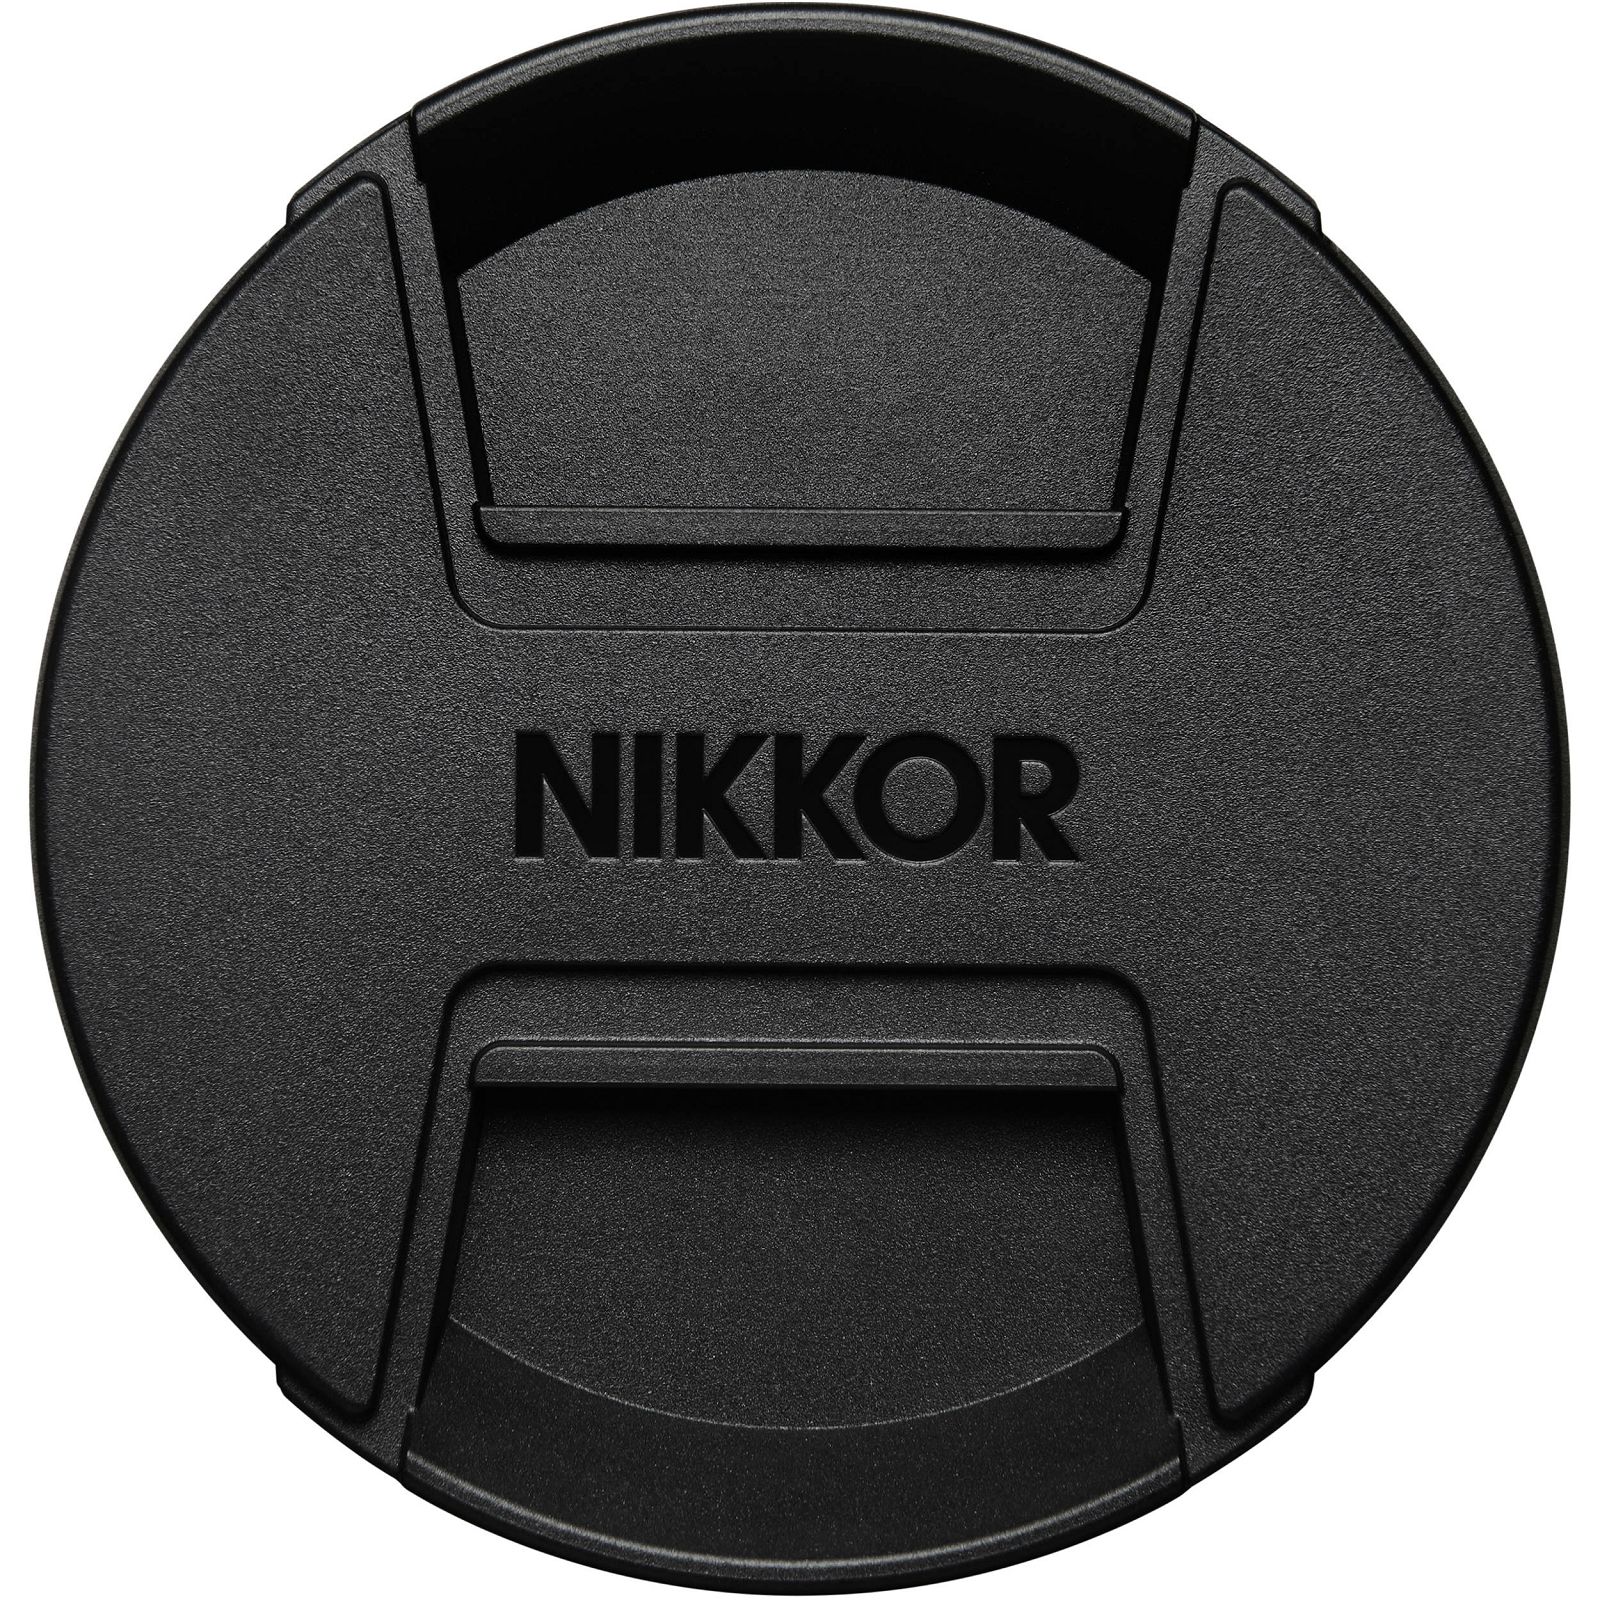 Nikon Z 14-30mm f/4 S FX Nikkor širokokutni objektiv (JMA705DA)